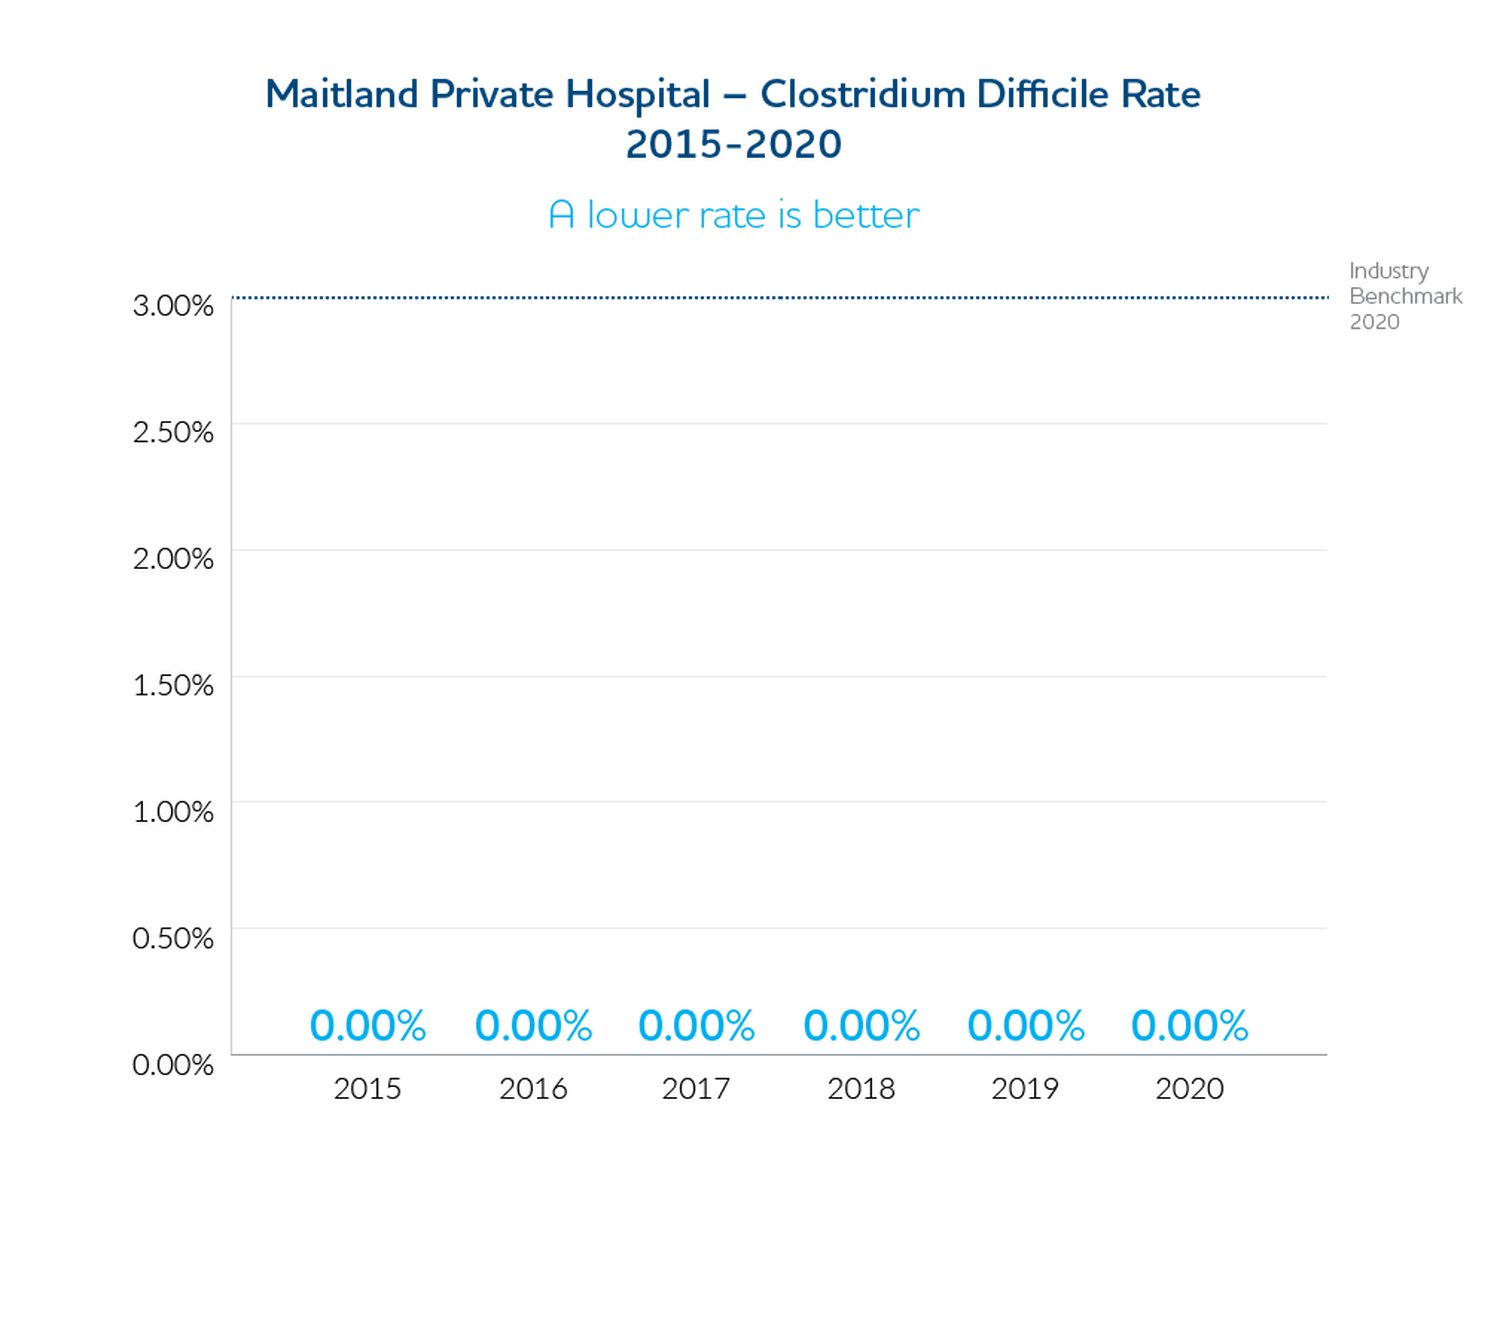 Maitland Private Hospital Clostridium Difficile Rate